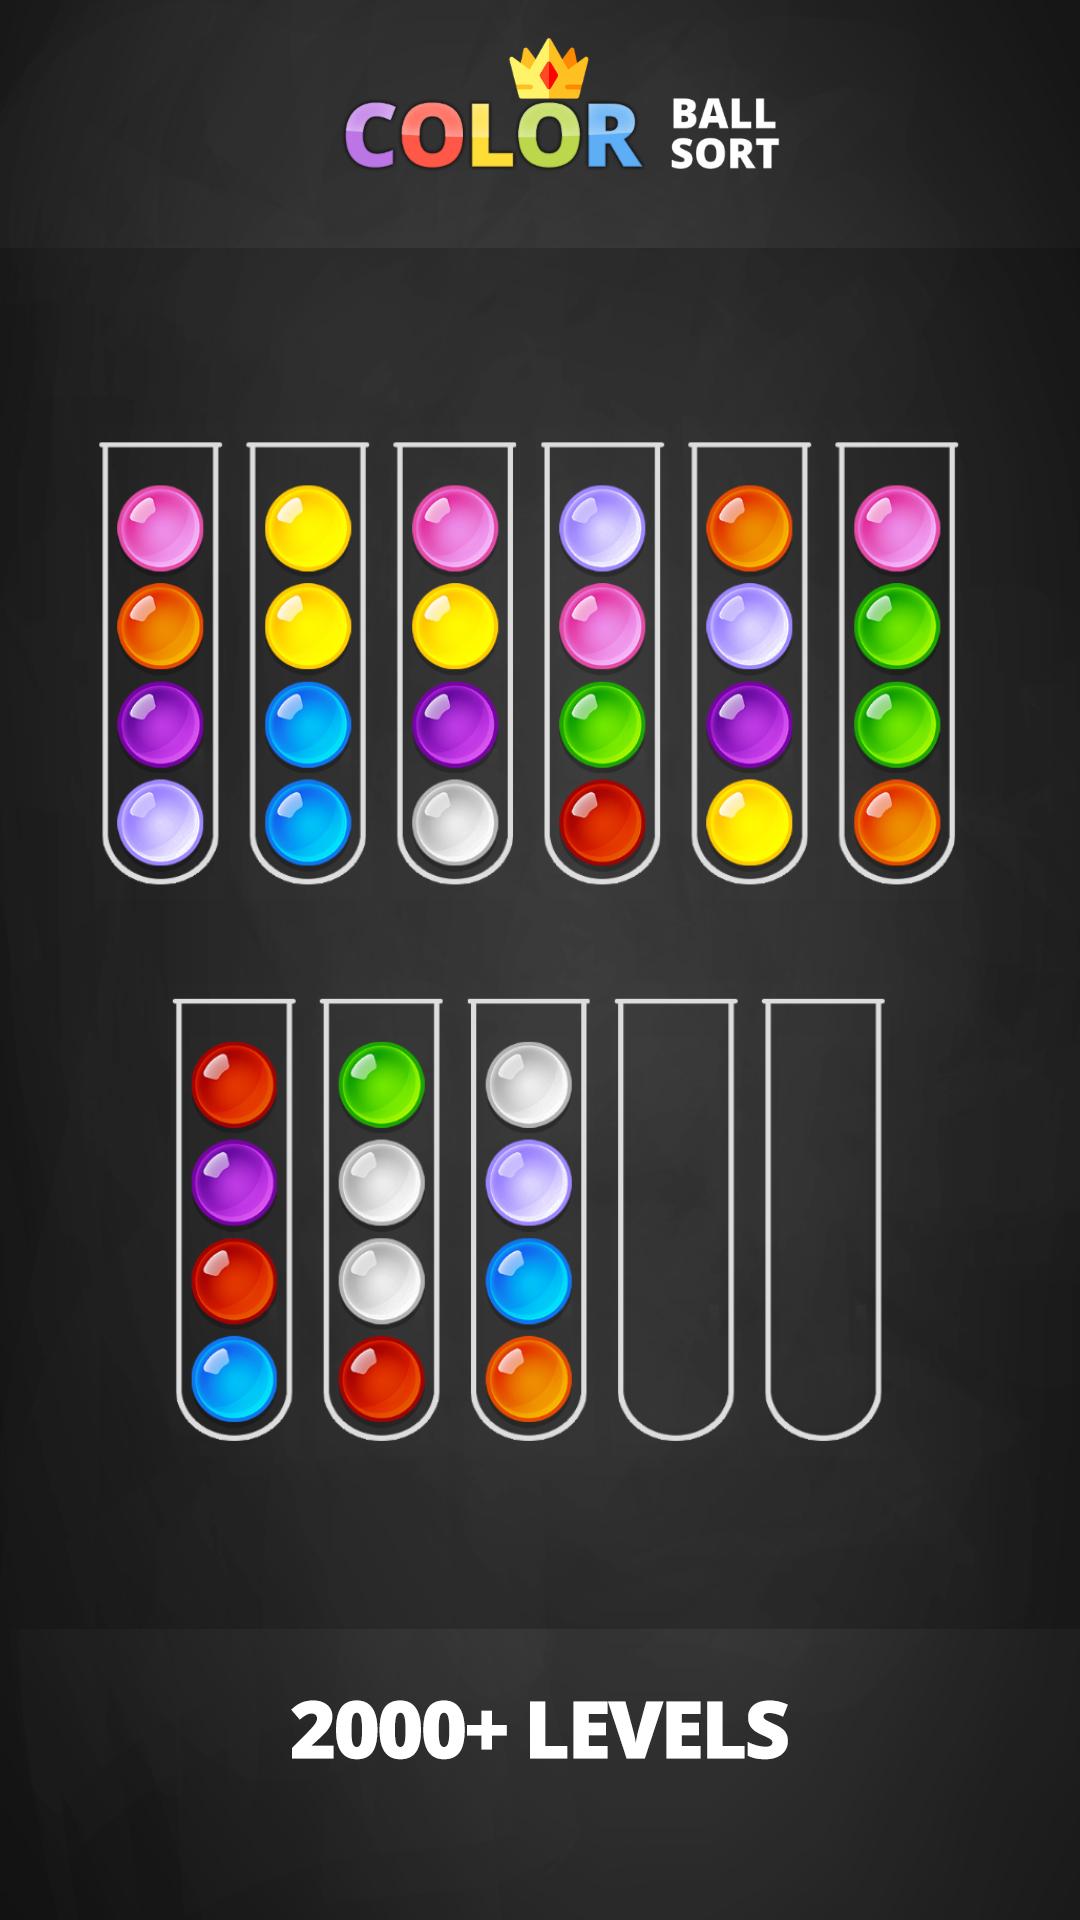 Игра сортировка шариков по цветам в колбах